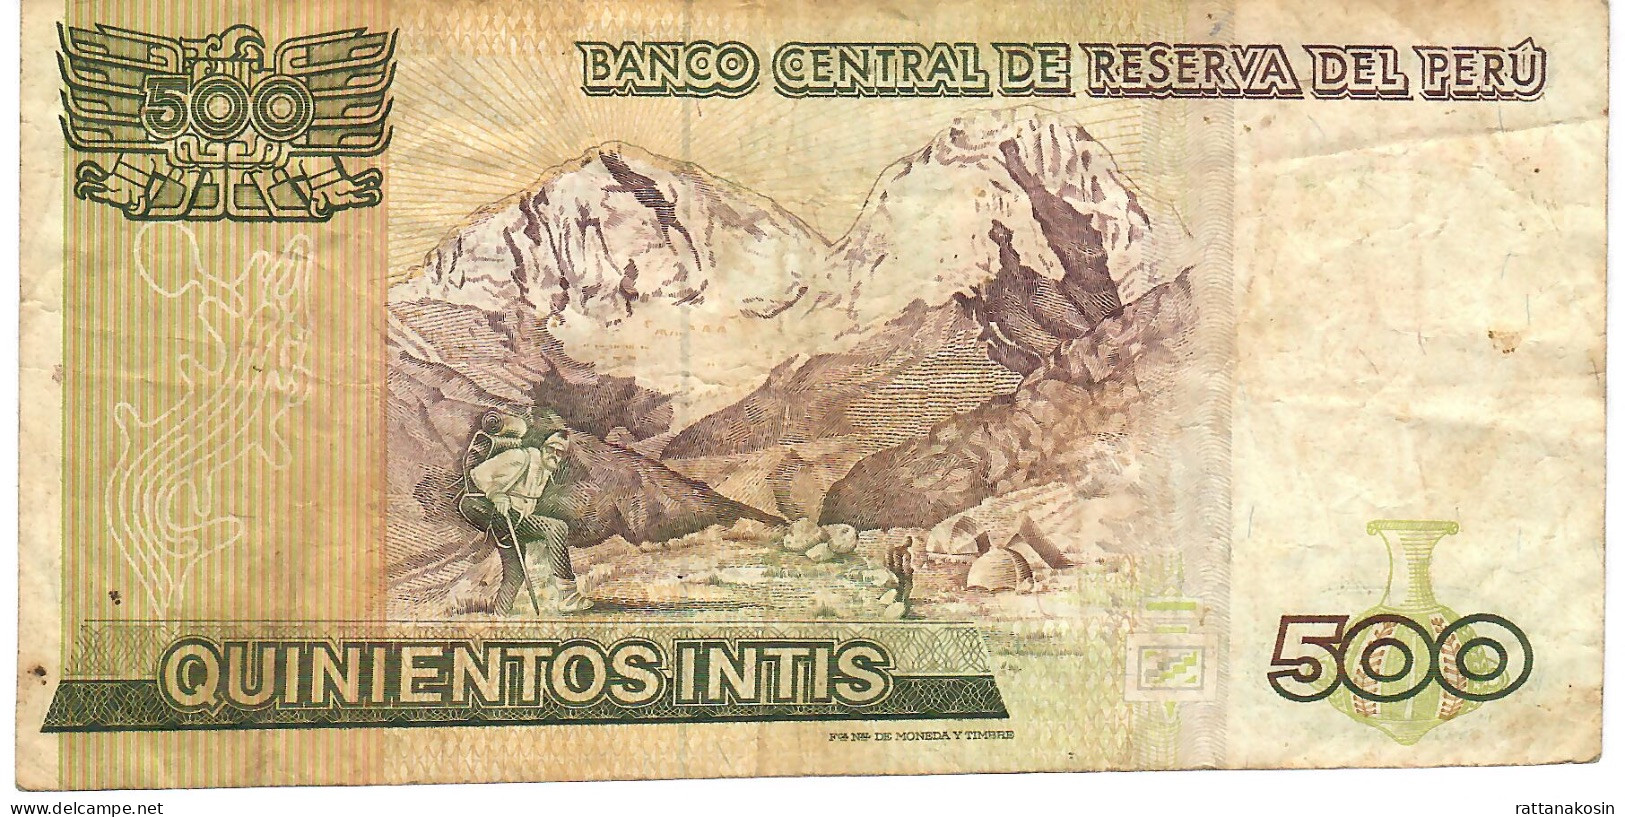 PERU P135 500 INTIS 6.3.1986  #A/H FINE - Perù